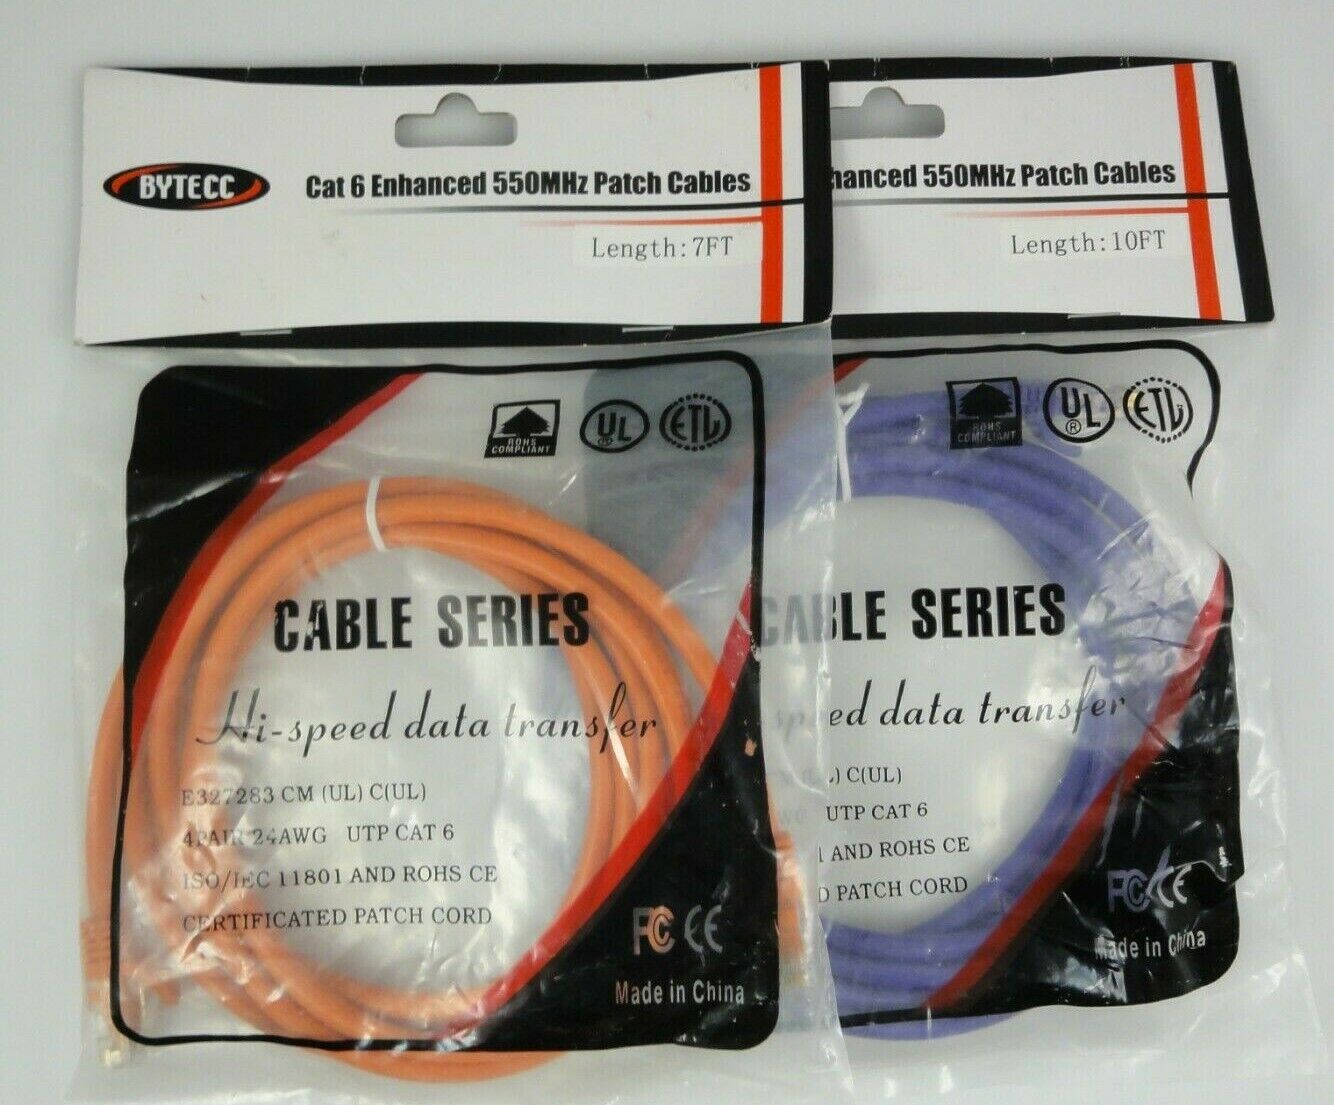 Lot Of 2 Bytecc Cat 6 Enhanced 550MHz Patch Cables Purple 10 Ft & Orange 7 Ft